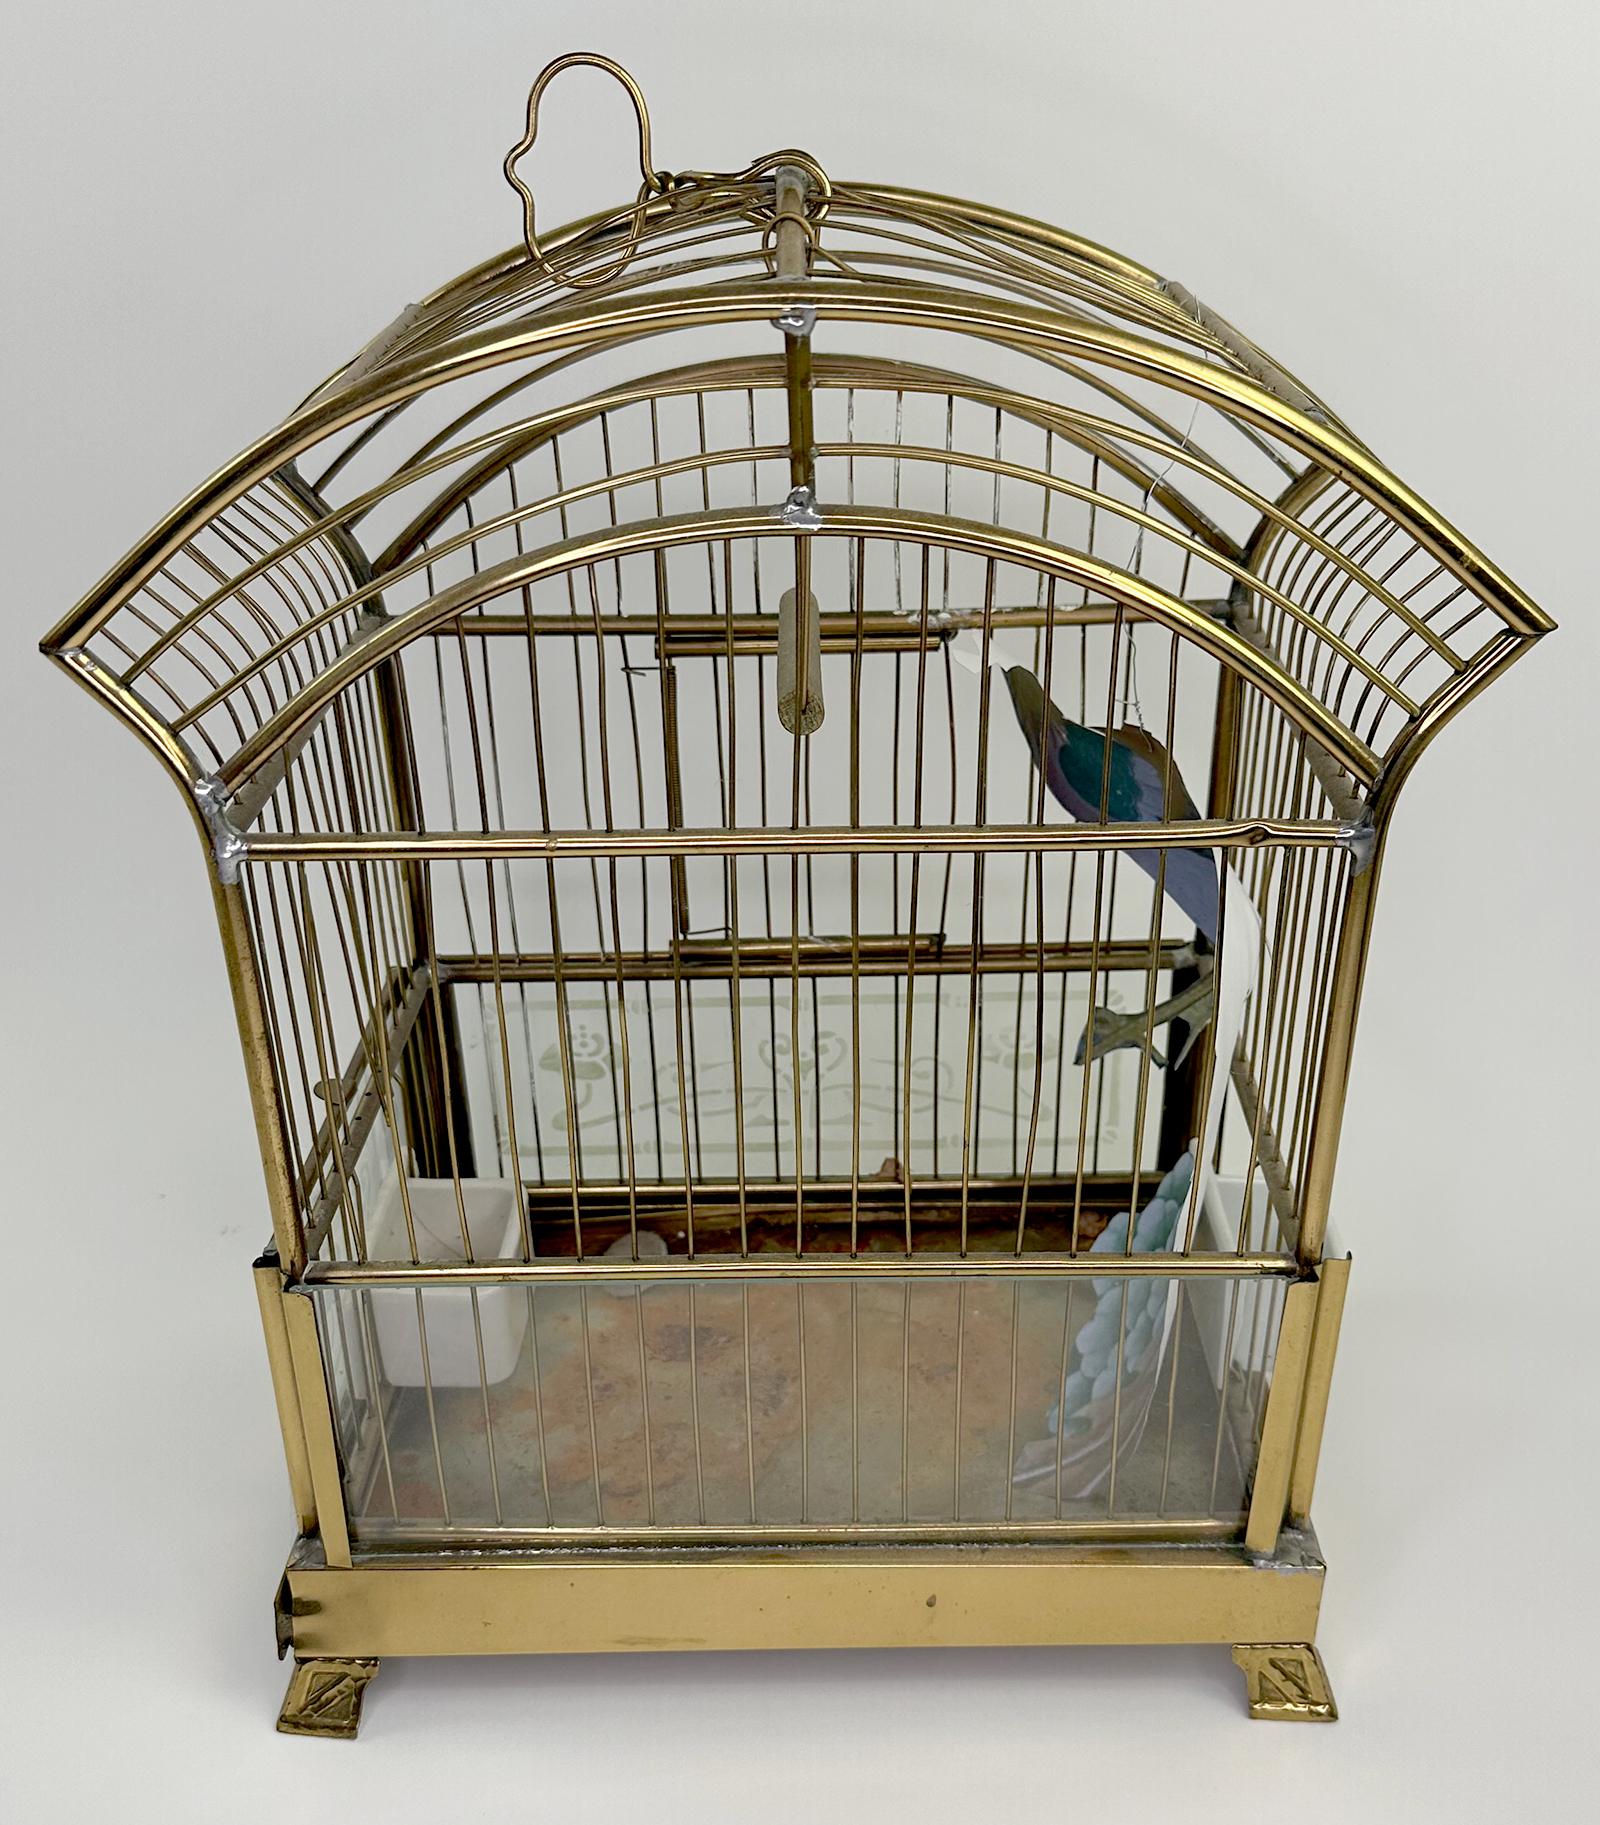 Ein elegant gearbeiteter und charmanter Vintage-Vogelkäfig mit Krone. Hauptsächlich aus Messing gefertigt. Um den Boden des Käfigs herum stehen kleine Glasstücke mit mattierten, geätzten Motiven. 

Dieser Käfig hat Beine, um ihn zu stützen, oder er